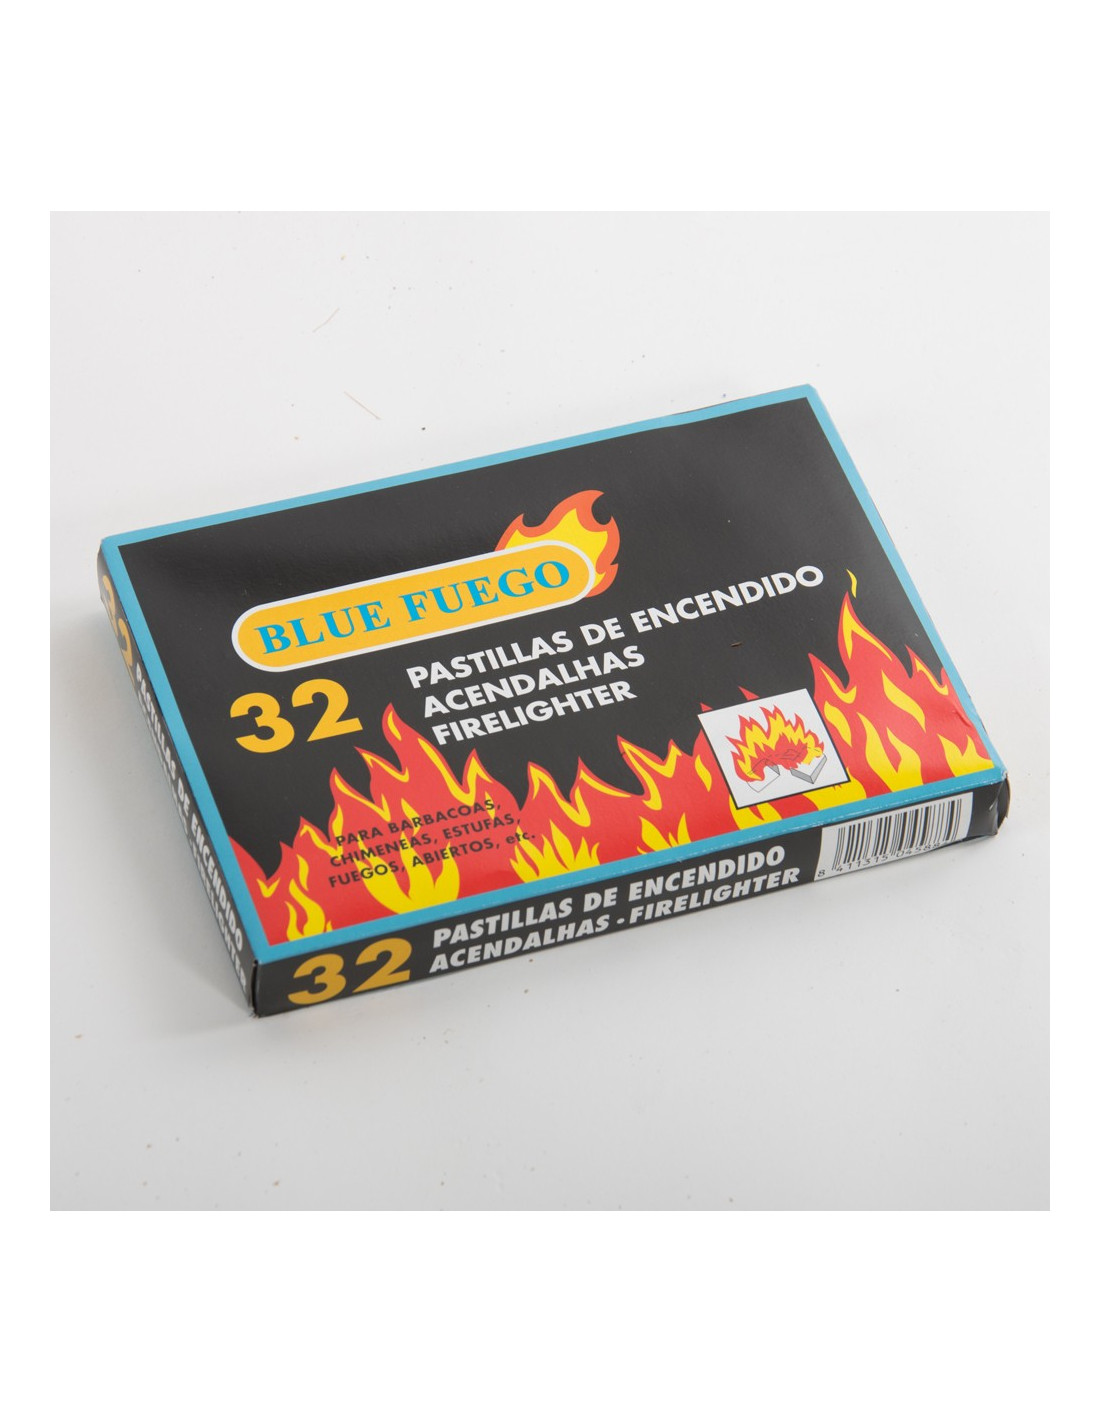 Caja de 32 Pastillas de Encendido Fuego para chimeneas, Estufas, barbacoas